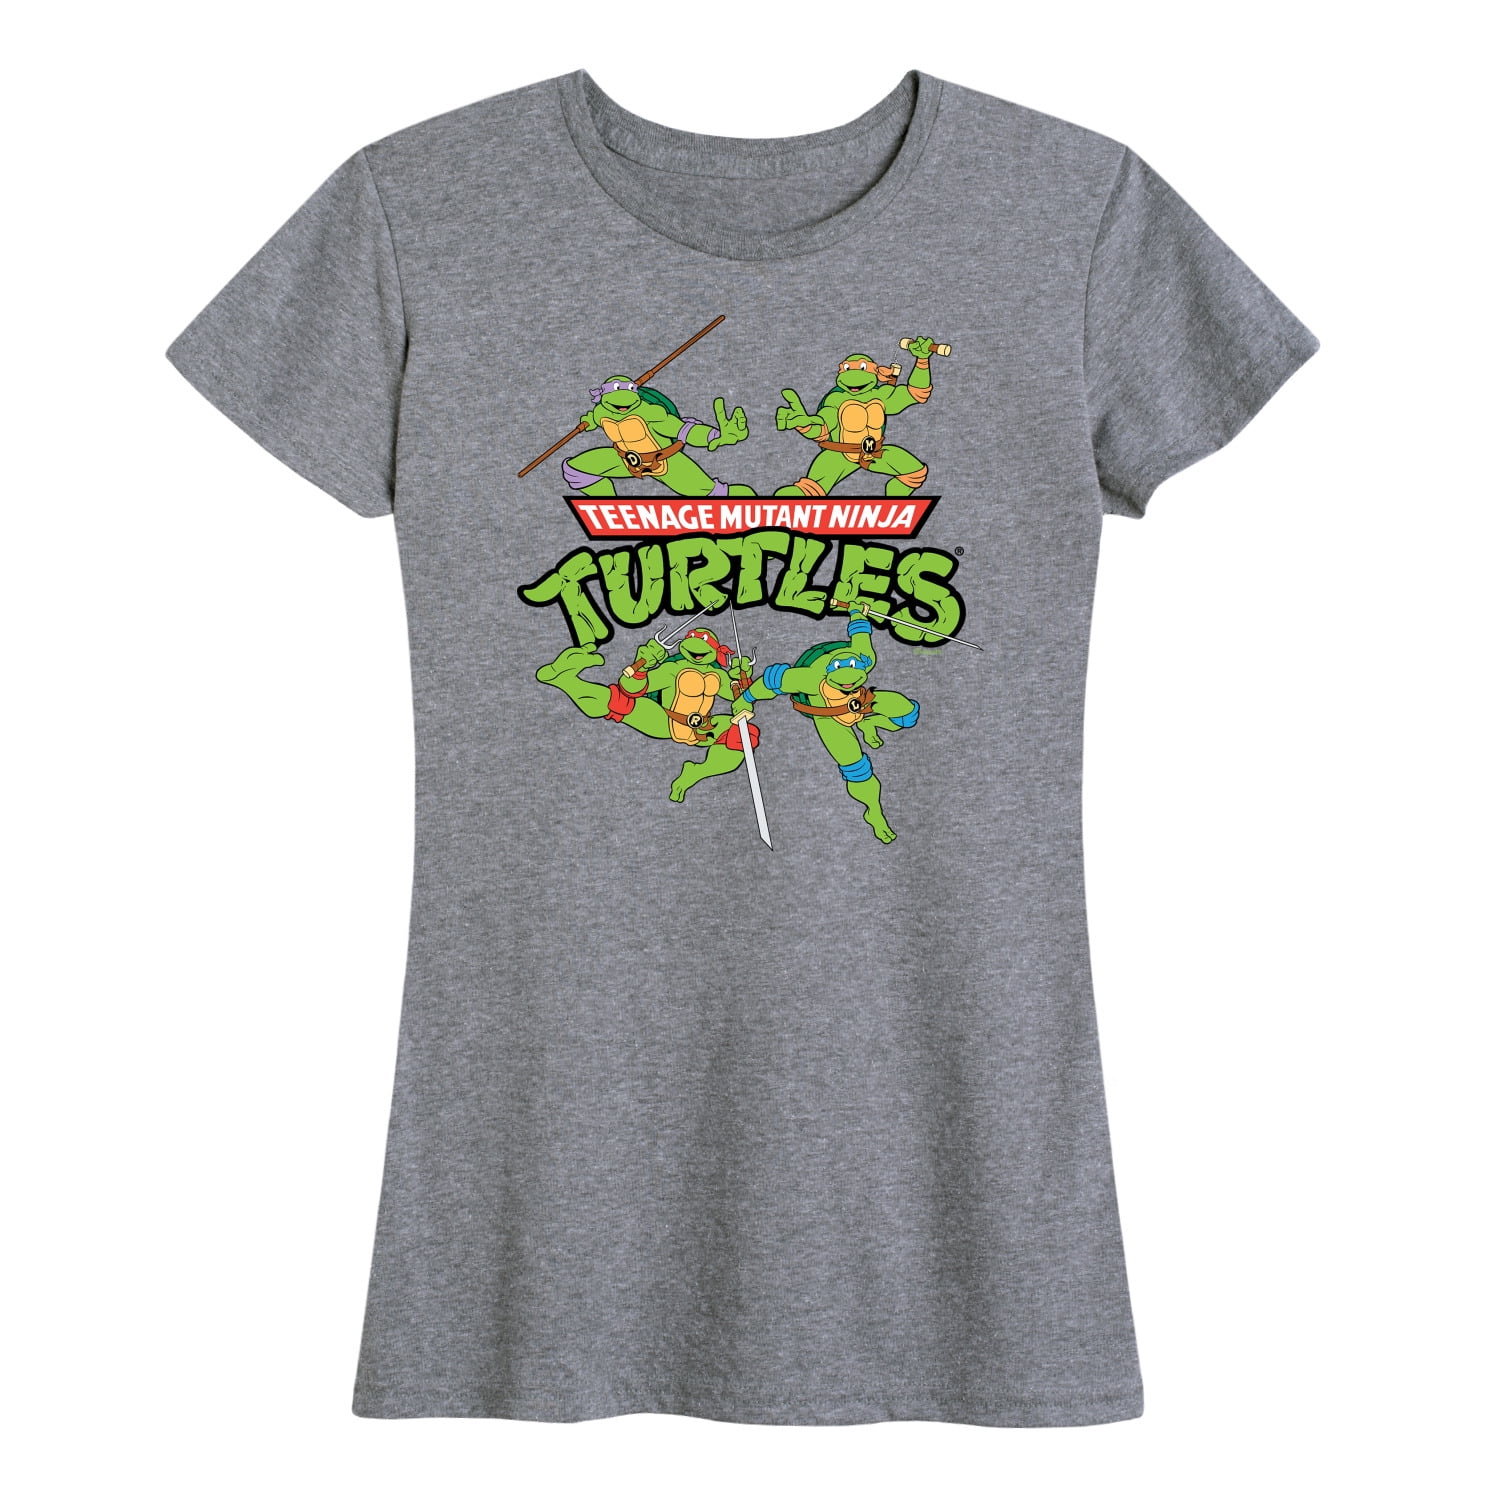 Teenage Mutant Ninja Turtles - Women's Short Sleeve Graphic T-Shirt ...